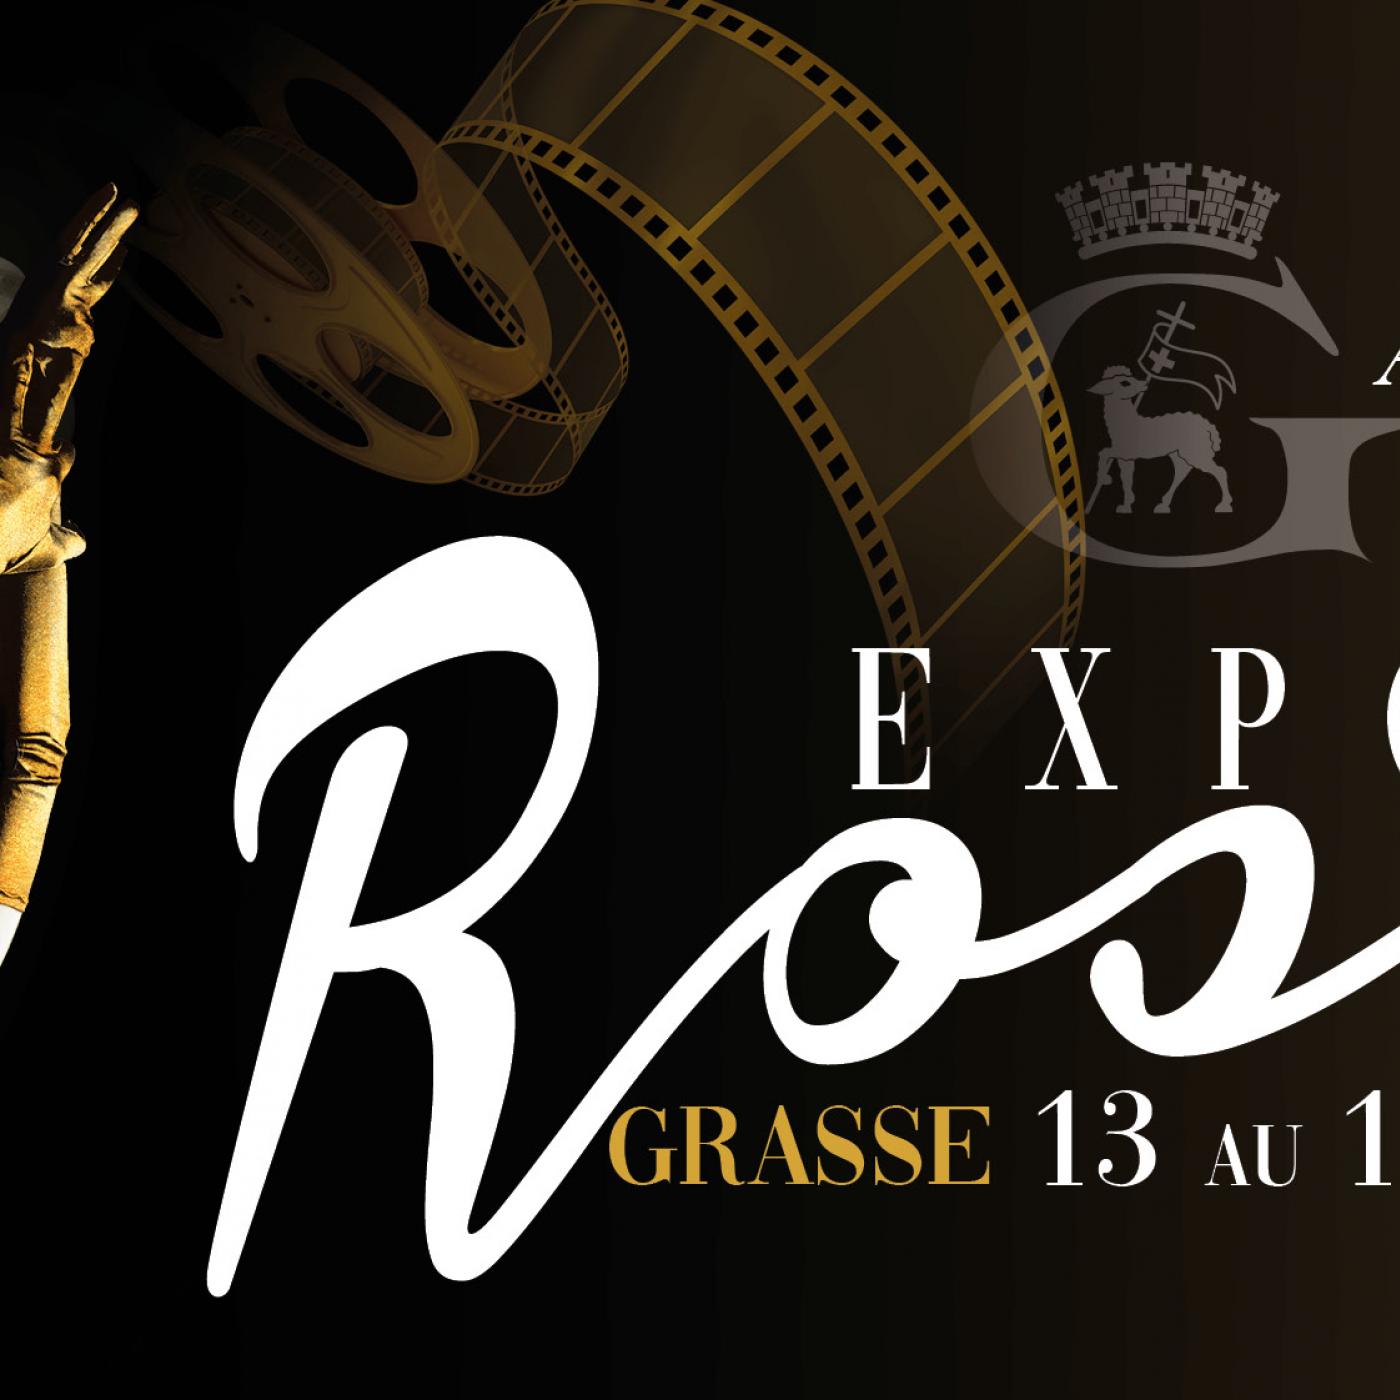 La grande fête de la Rose à Grasse est de retour !